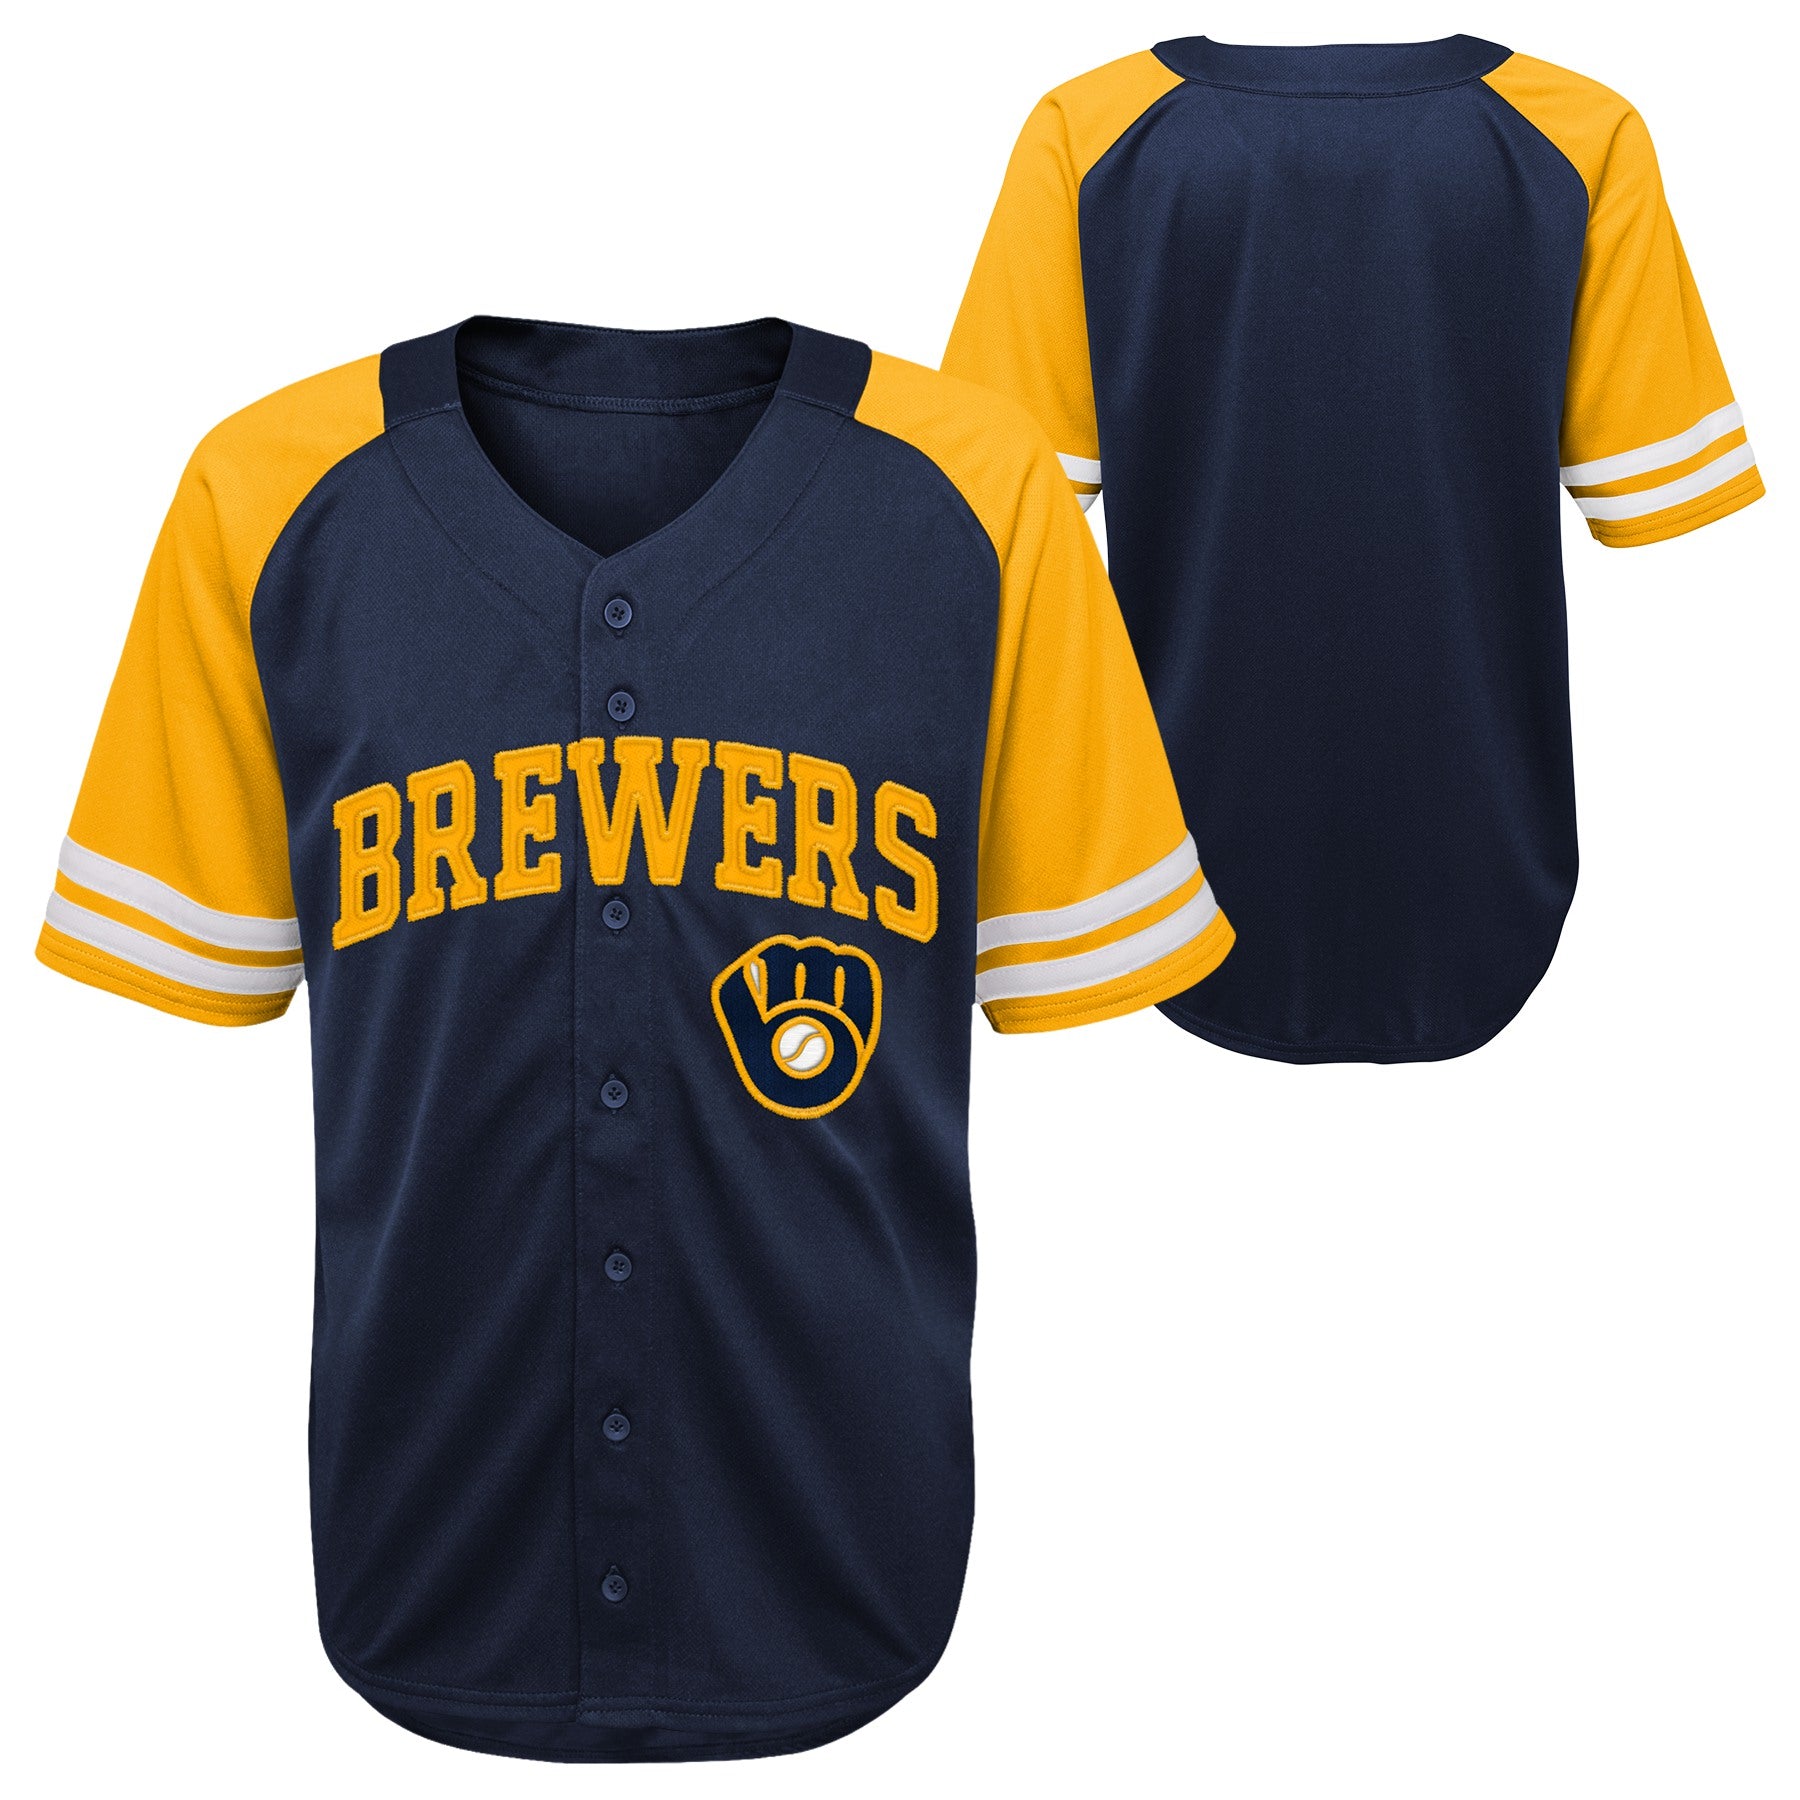 Kids Milwaukee Brewers Jerseys, Kids Brewers Baseball Jersey, Uniforms